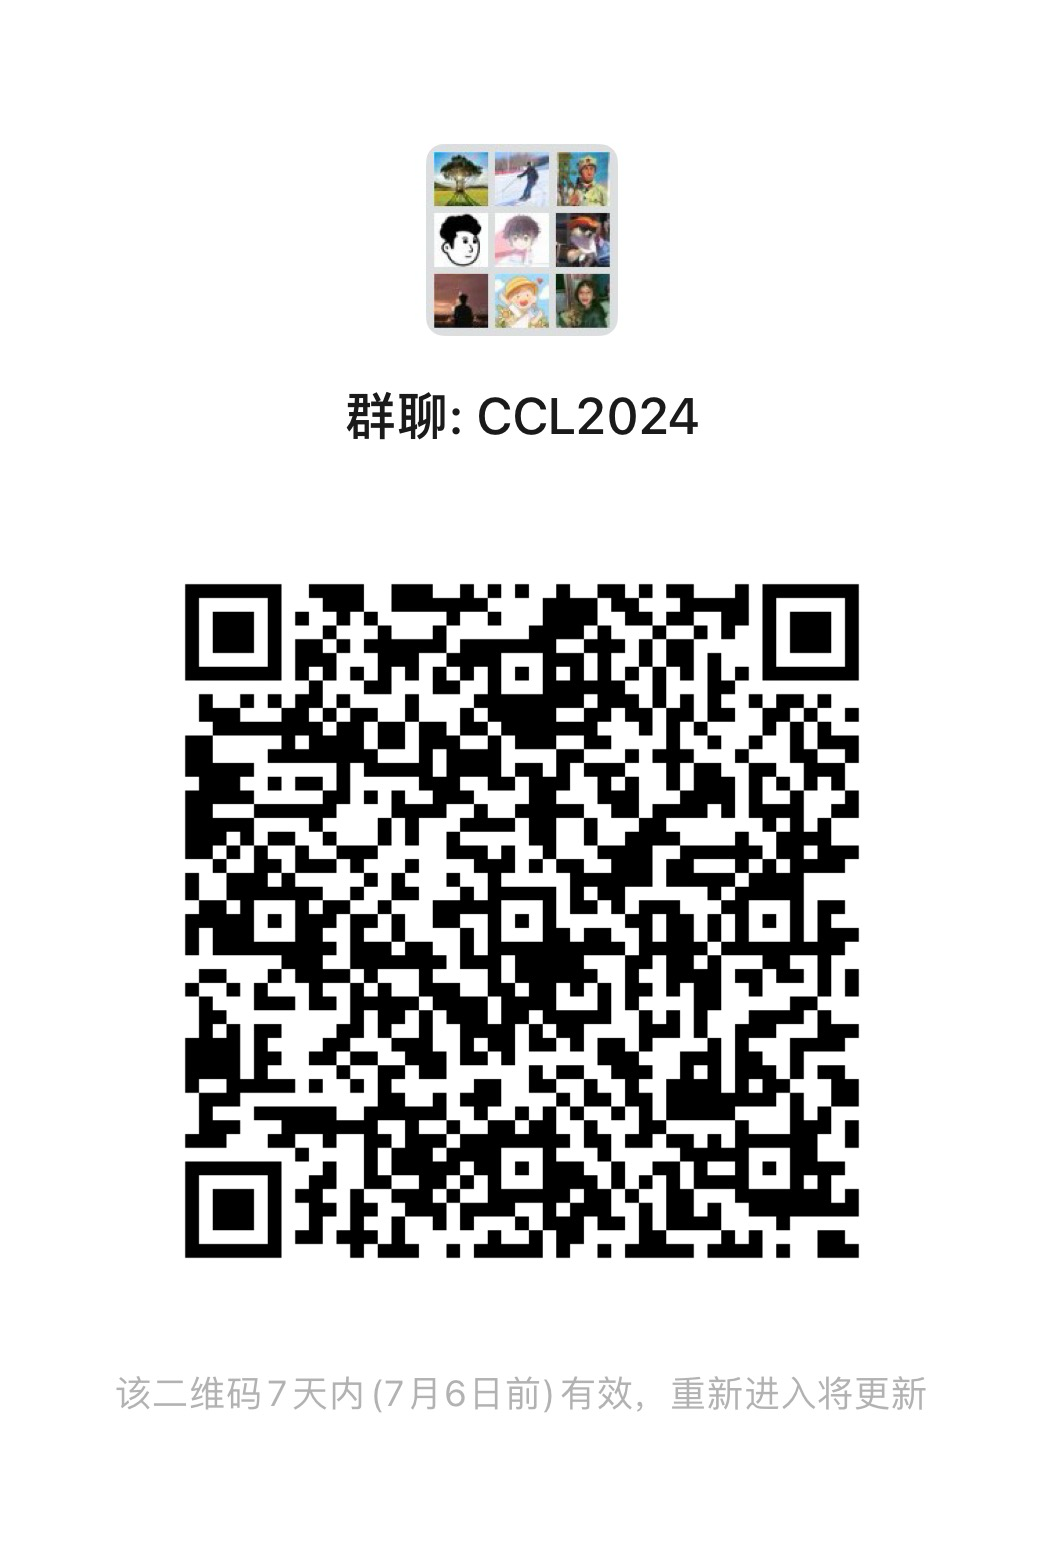 CCL2024参会群（微信）